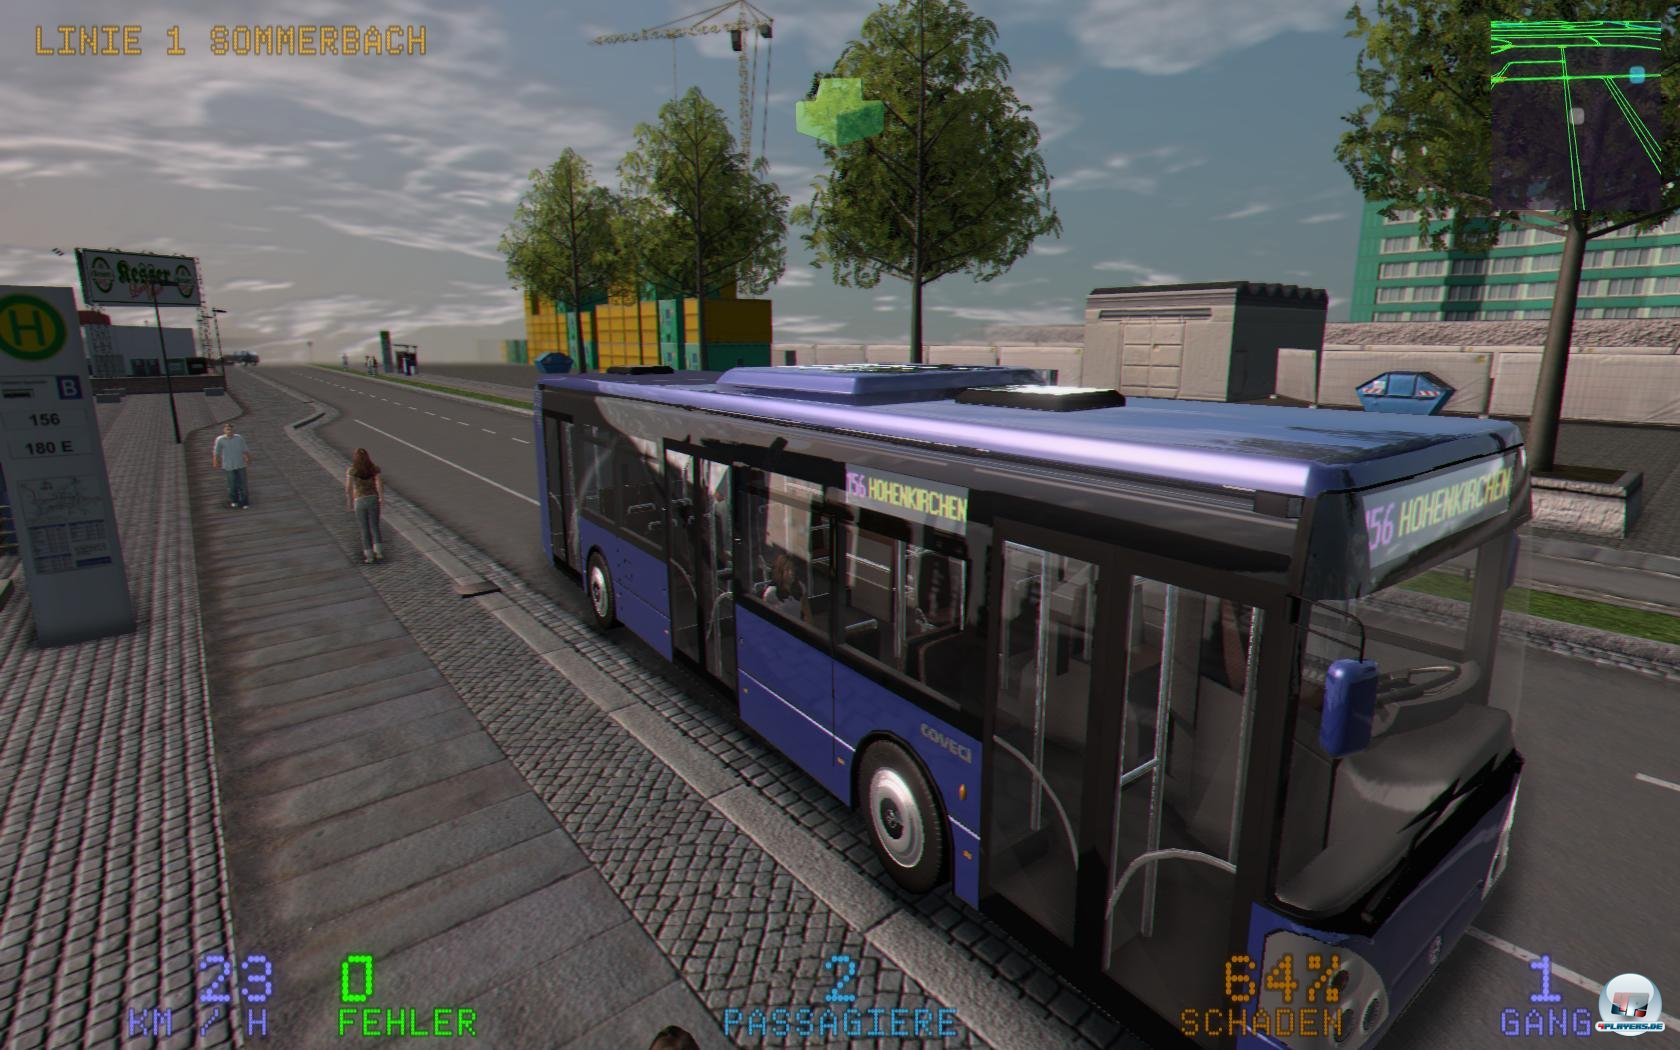 Das Bus-Szenario gehört noch zu den besten im Spiel